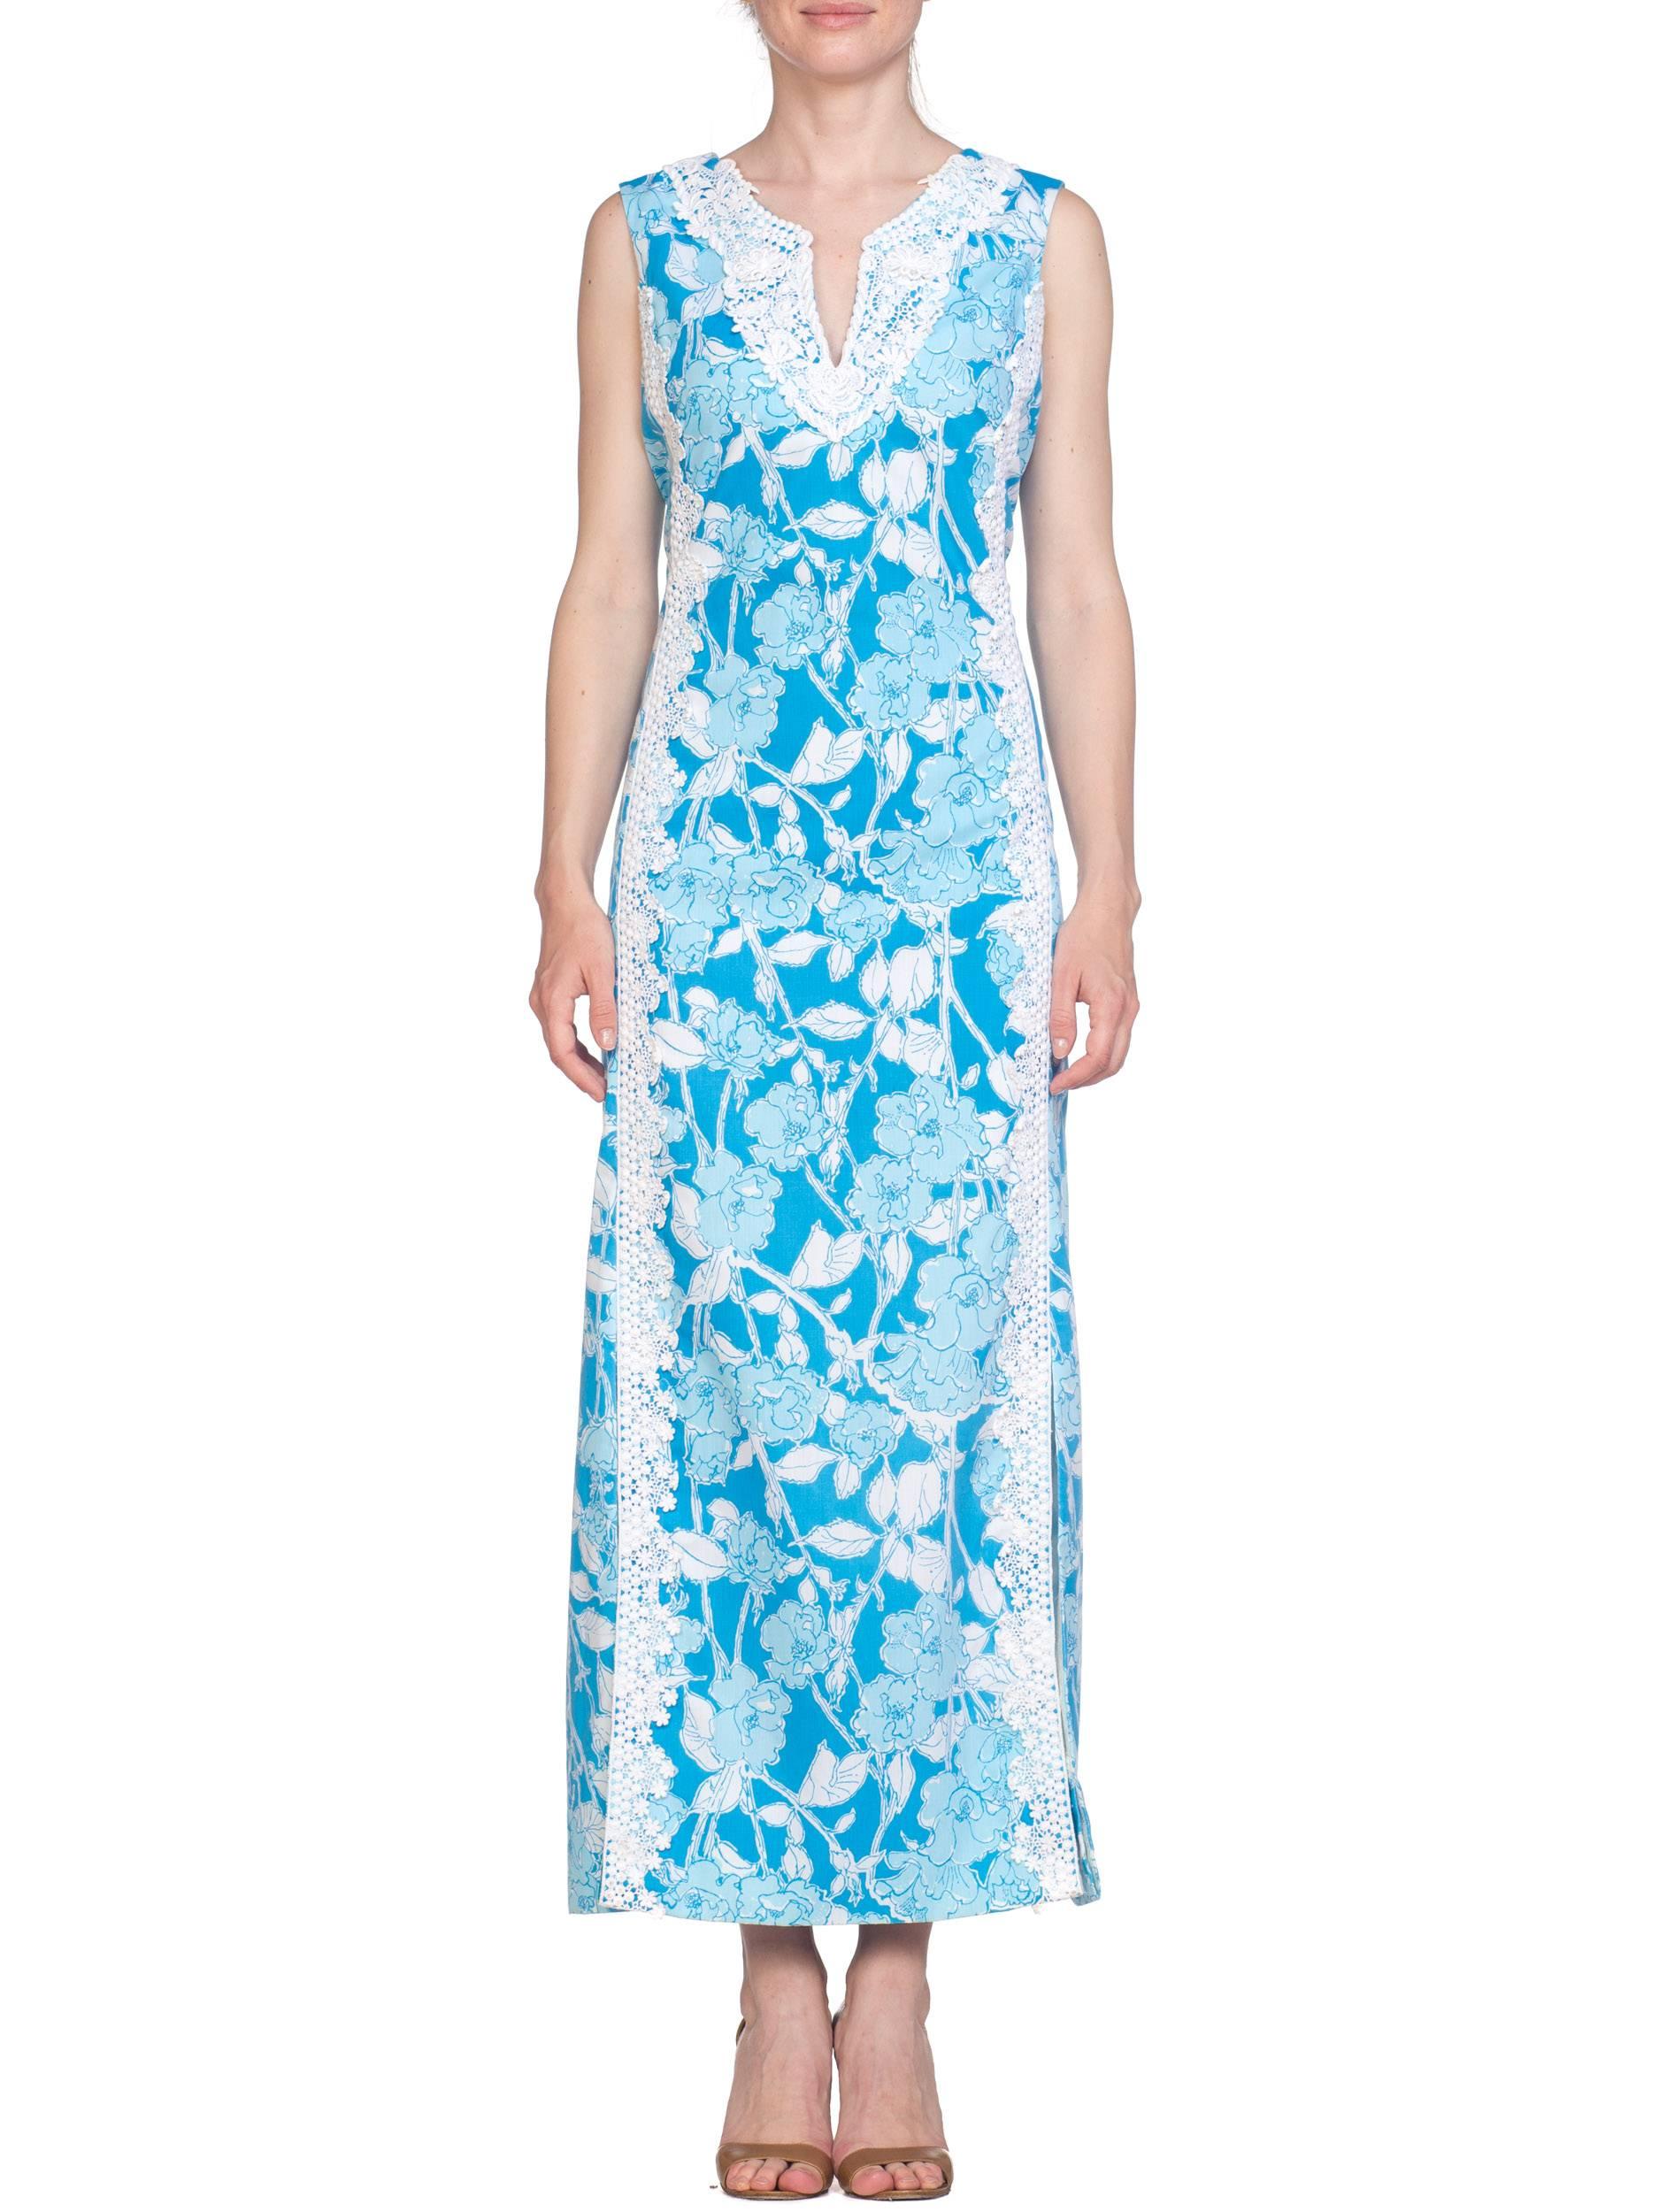 Blue 1960S LILY PULITZER Aqua  Floral Cotton Dress With White Lace Flowers Szl